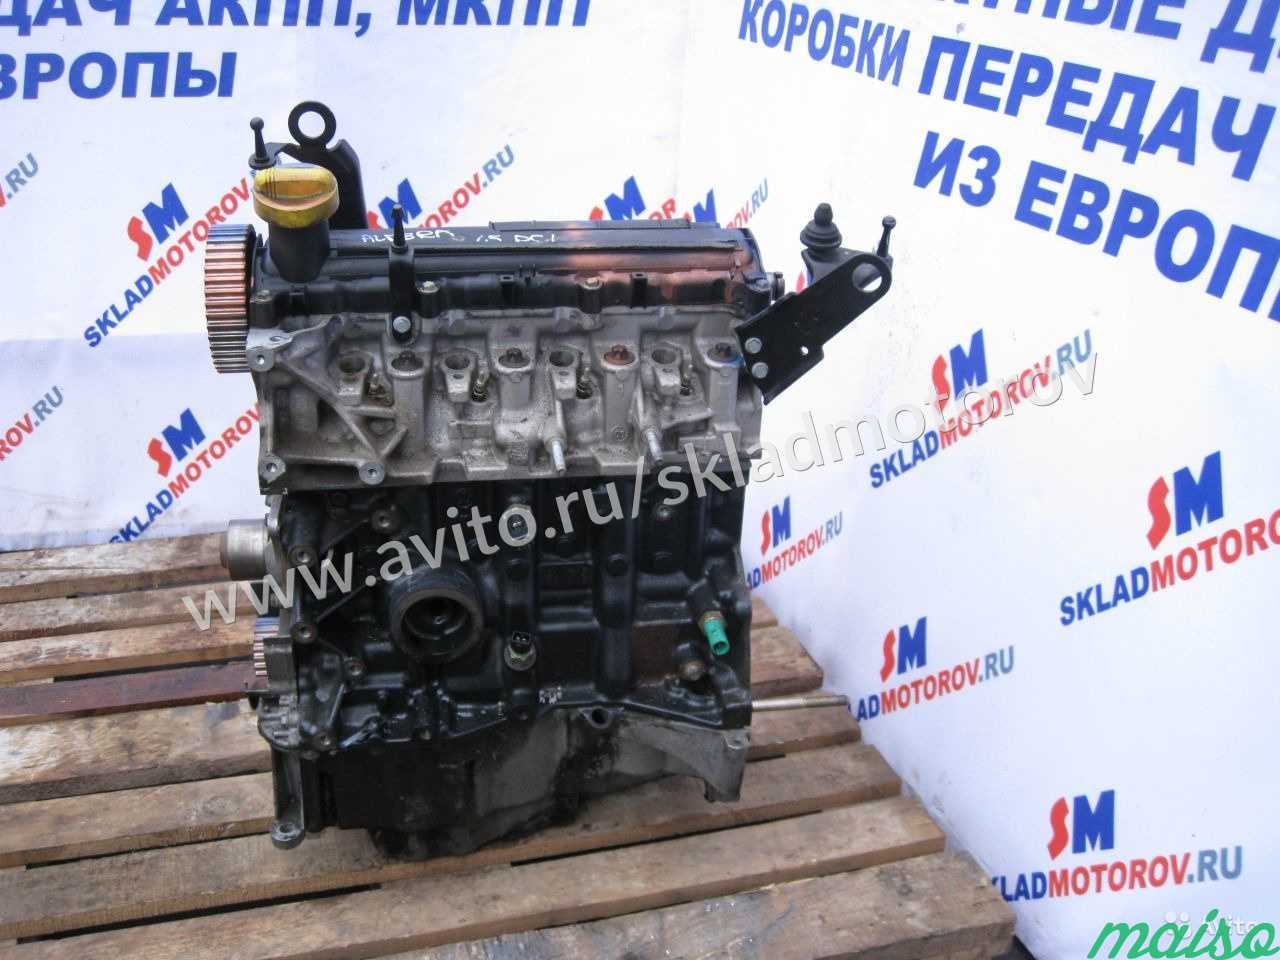 Двигатель K9KA260 Nissan Almera 1.5 Dci в Санкт-Петербурге. Фото 1